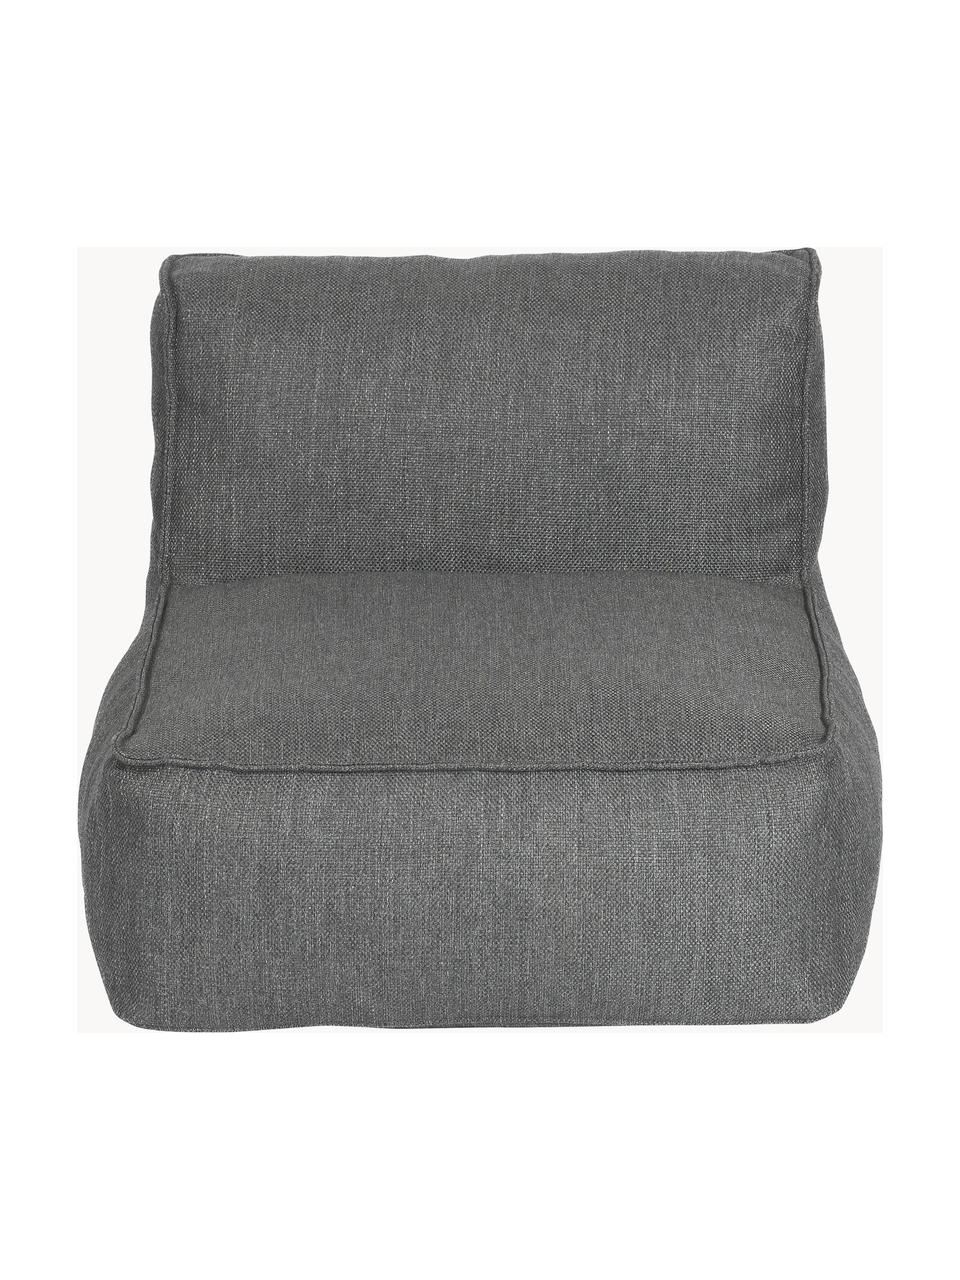 Módulo central de exterior sofá Grow, Tapizado: 100% poliéster, resistent, Tejido gris oscuro, An 75 x F 95 cm